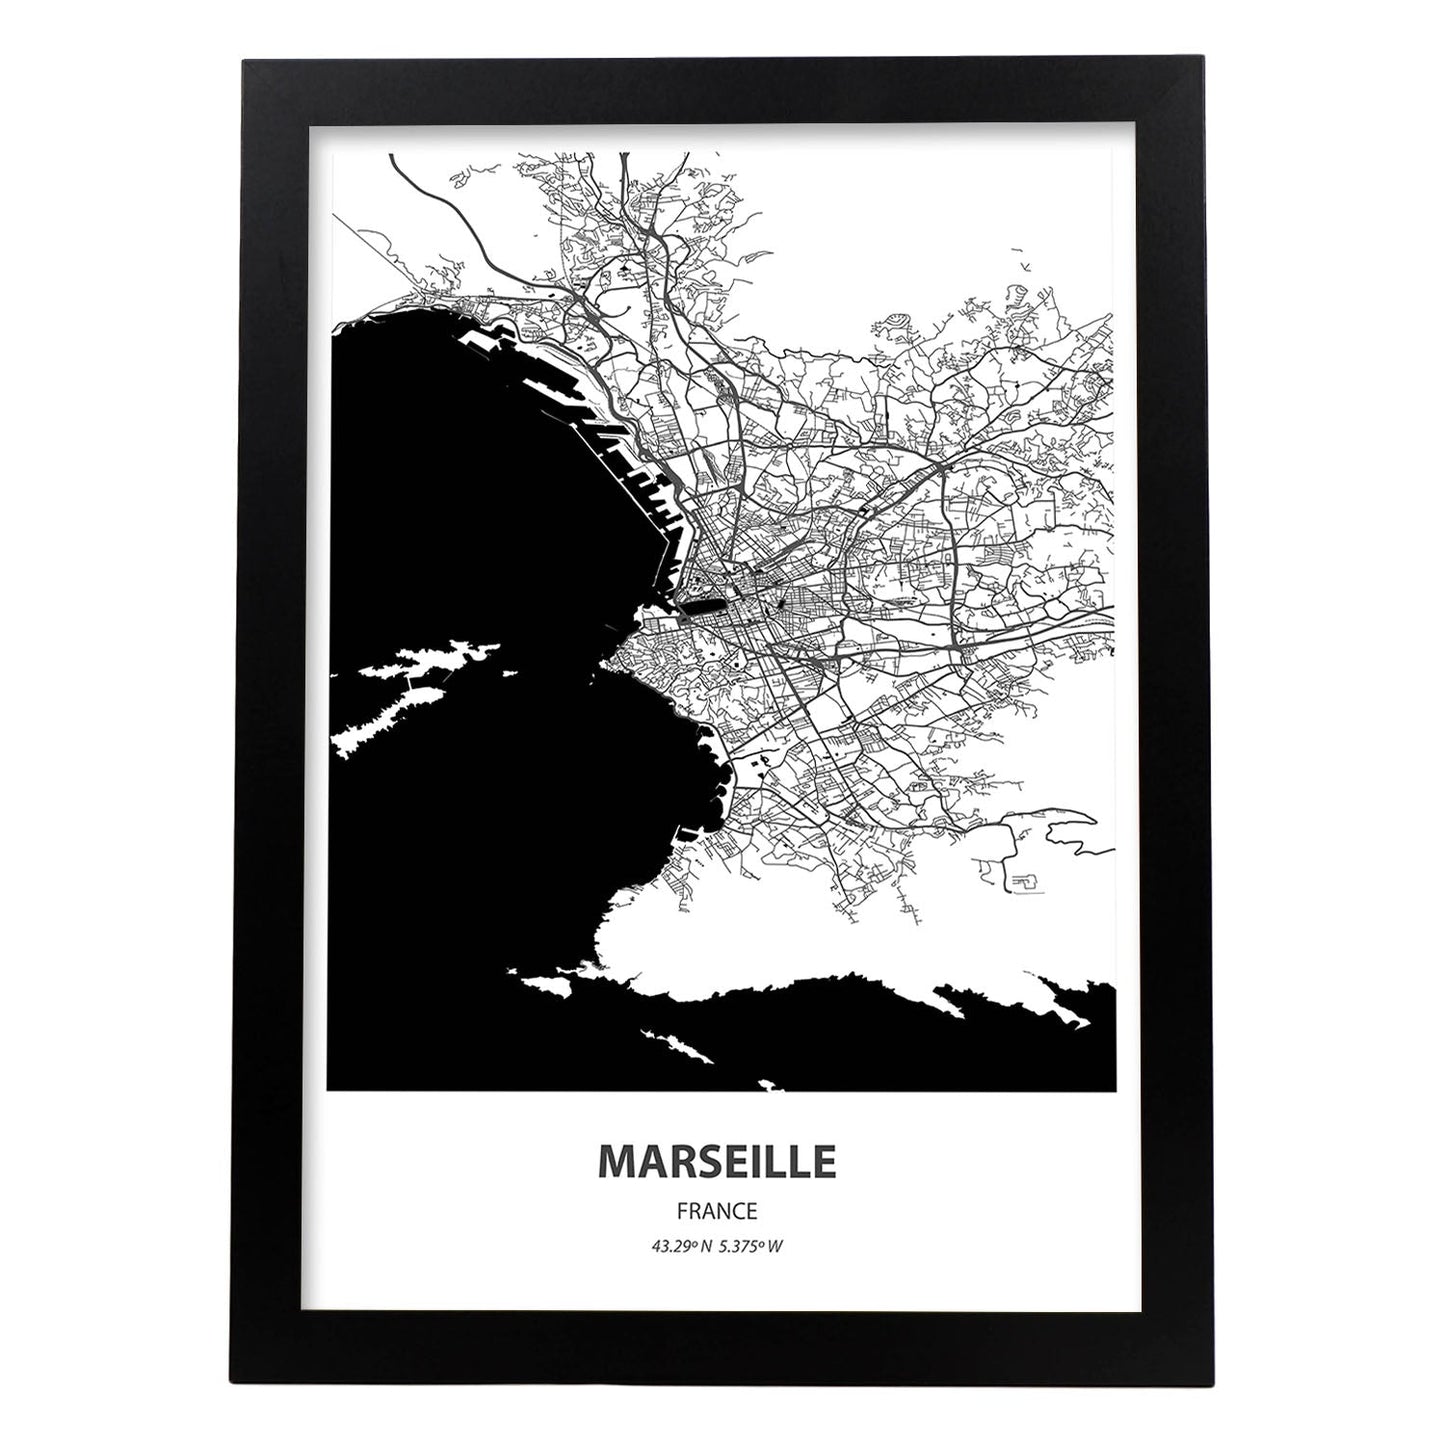 Poster con mapa de Marselle - Francia. Láminas de ciudades de Francia con mares y ríos en color negro.-Artwork-Nacnic-A3-Marco Negro-Nacnic Estudio SL